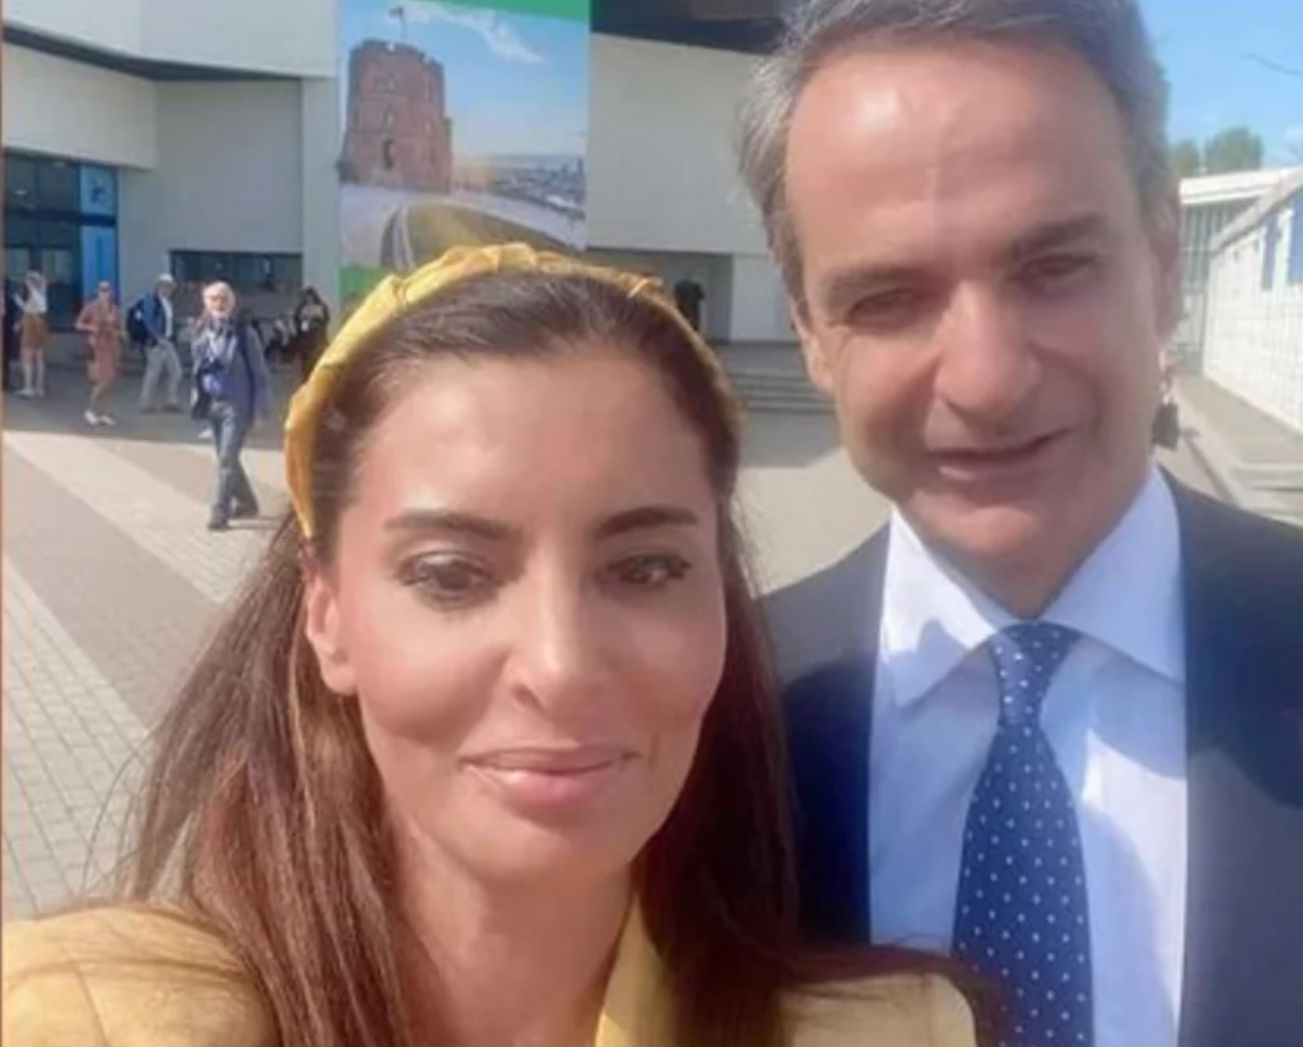 Πρώτα έκραζε και τώρα θαυμάζει: Selfie με τον Μητσοτάκη έβγαλε η Τουρκάλα δημοσιογράφος που πέρυσι καλούσε σε τουριστικό μποϊκοτάζ της Ελλάδας